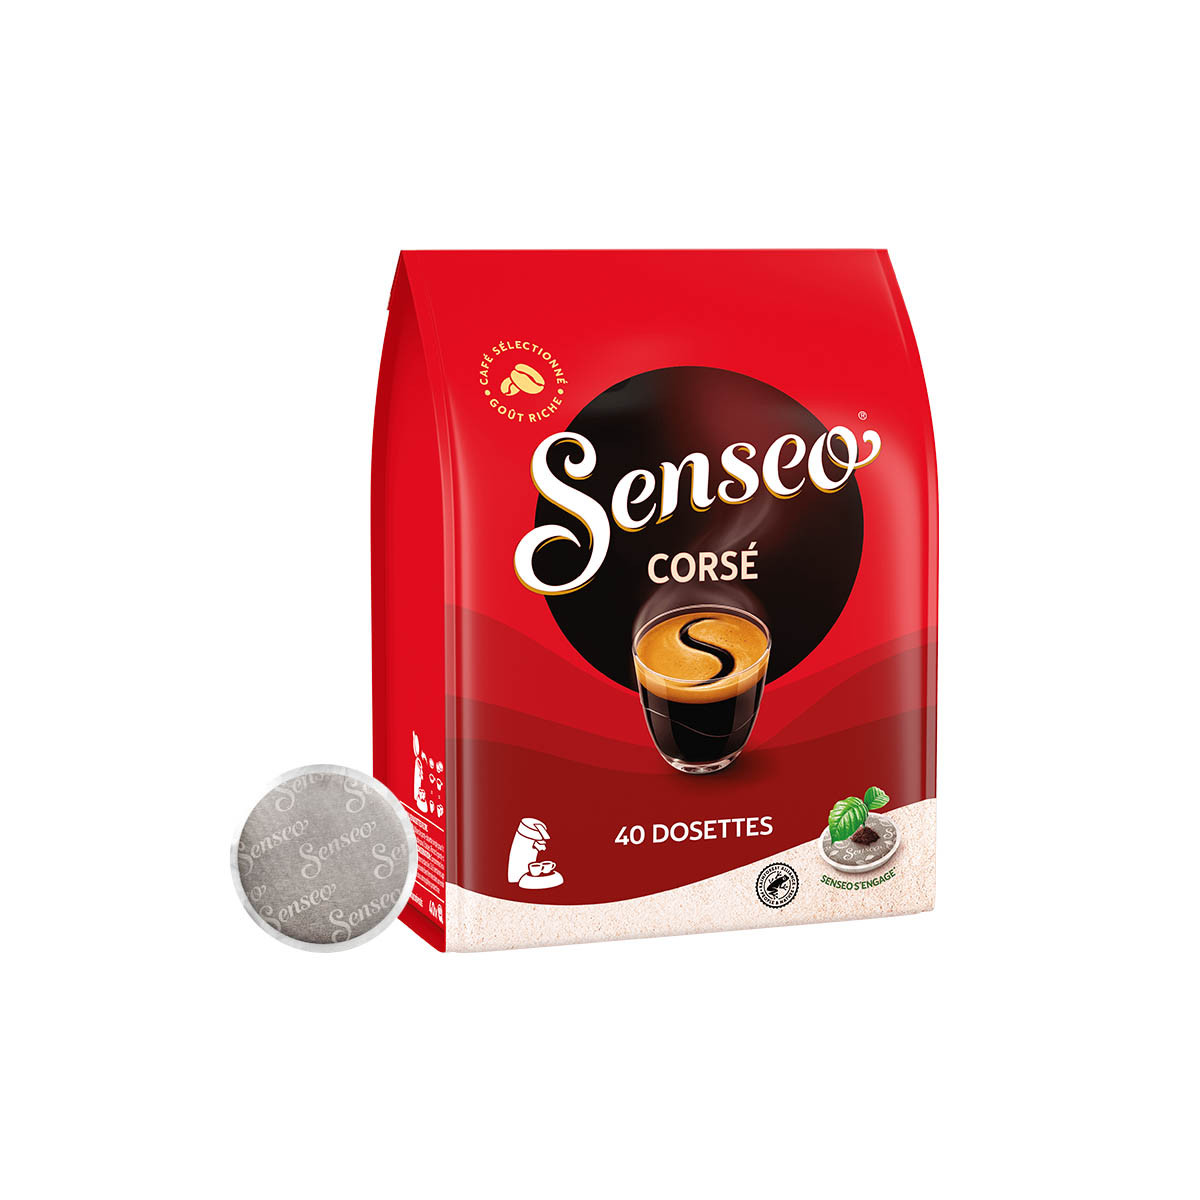 Dosettes de café Senseo Corsé - Paquet de 40 sur